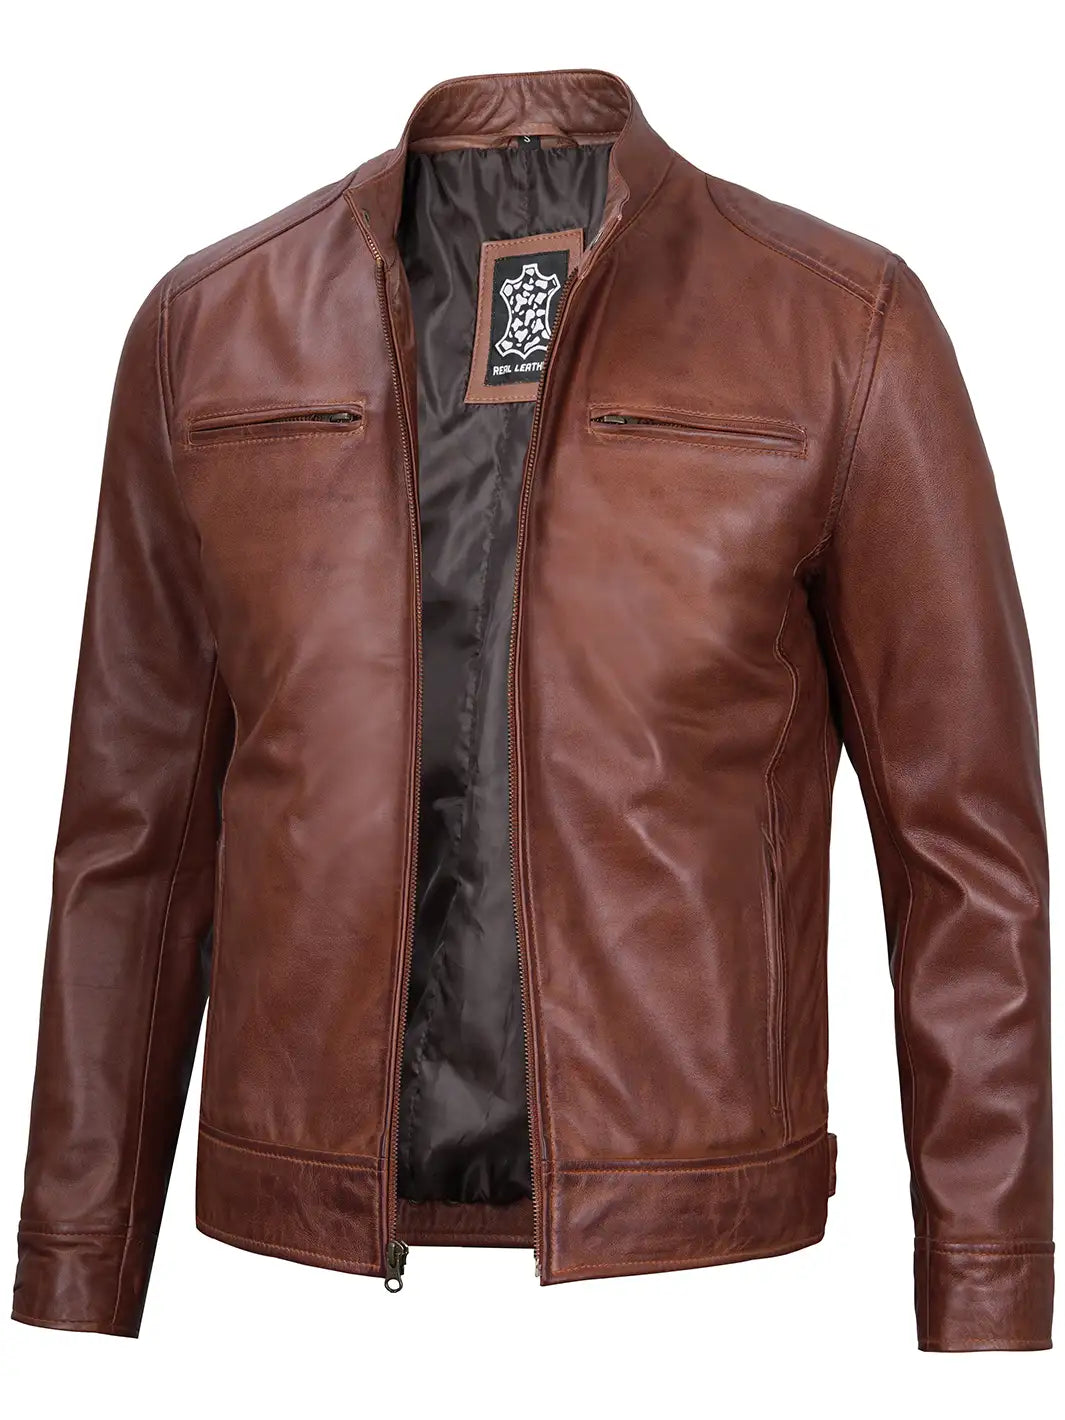 Mens cafe racer leather jacket